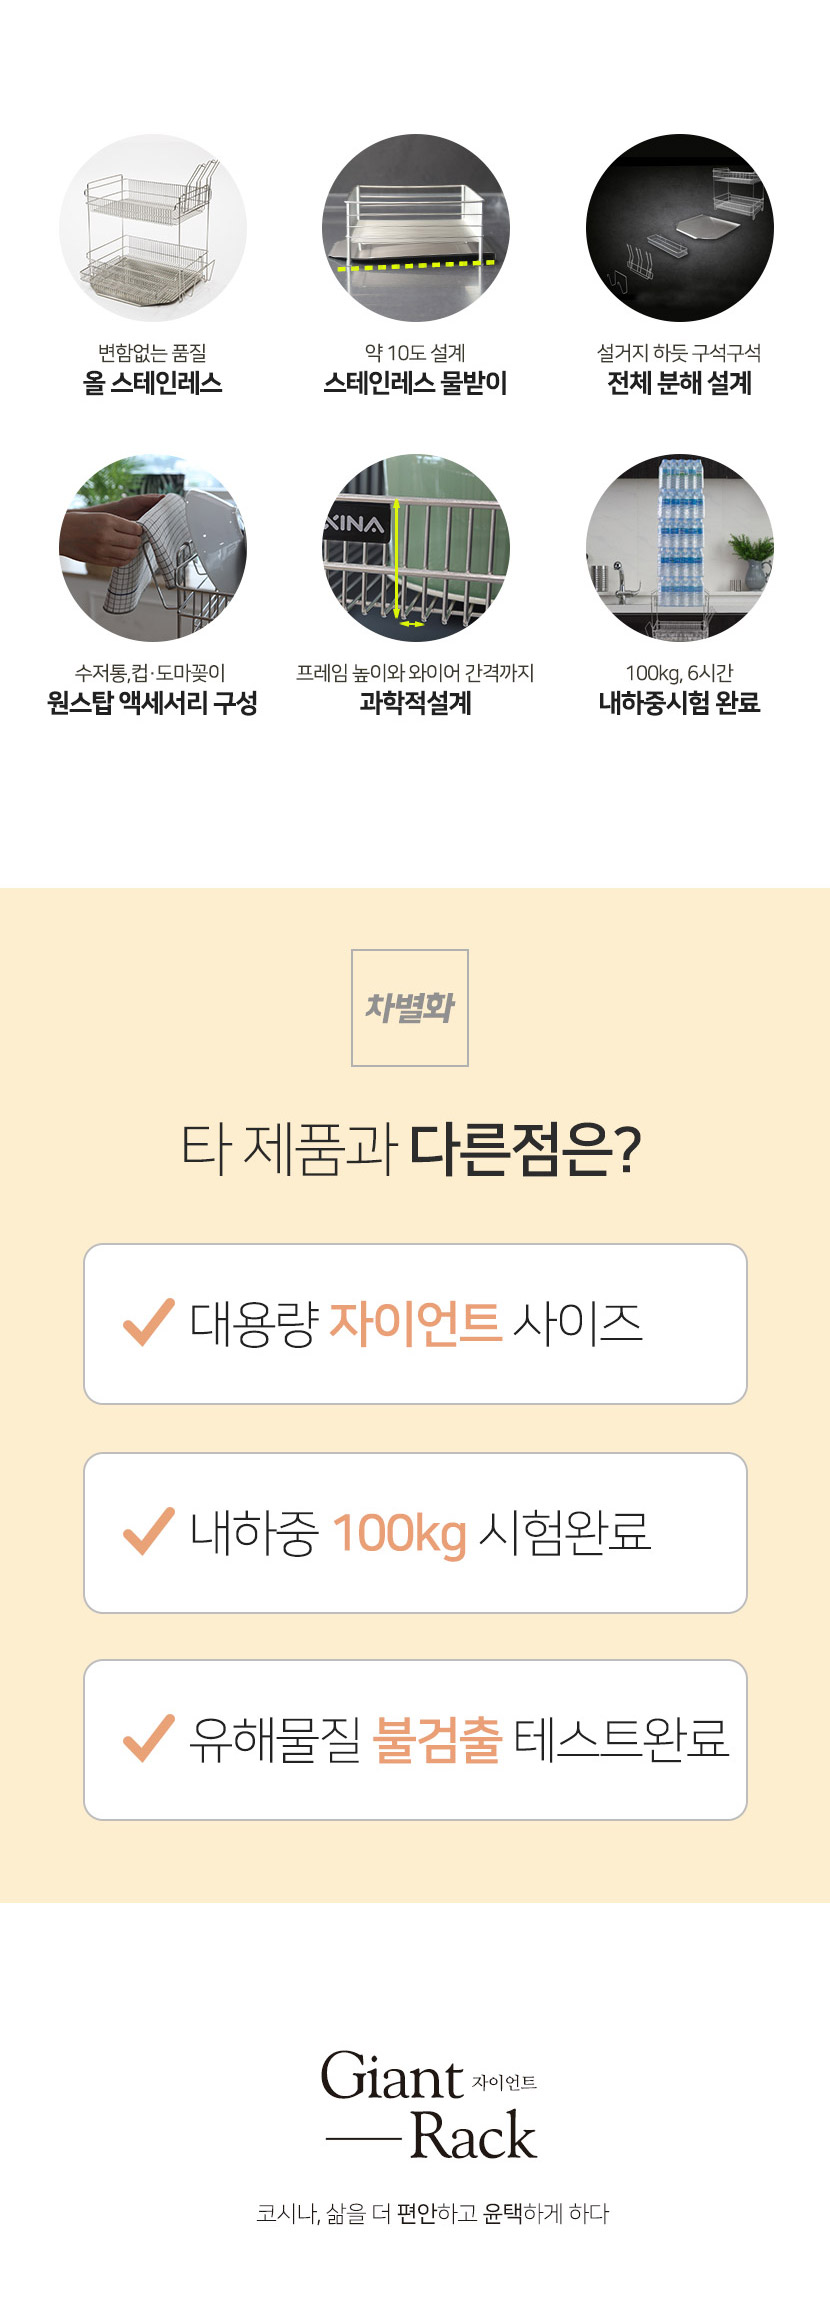 韓國食品-[코시나] 자이언트 특대형 올스텐 식기건조대 2단 풀세트